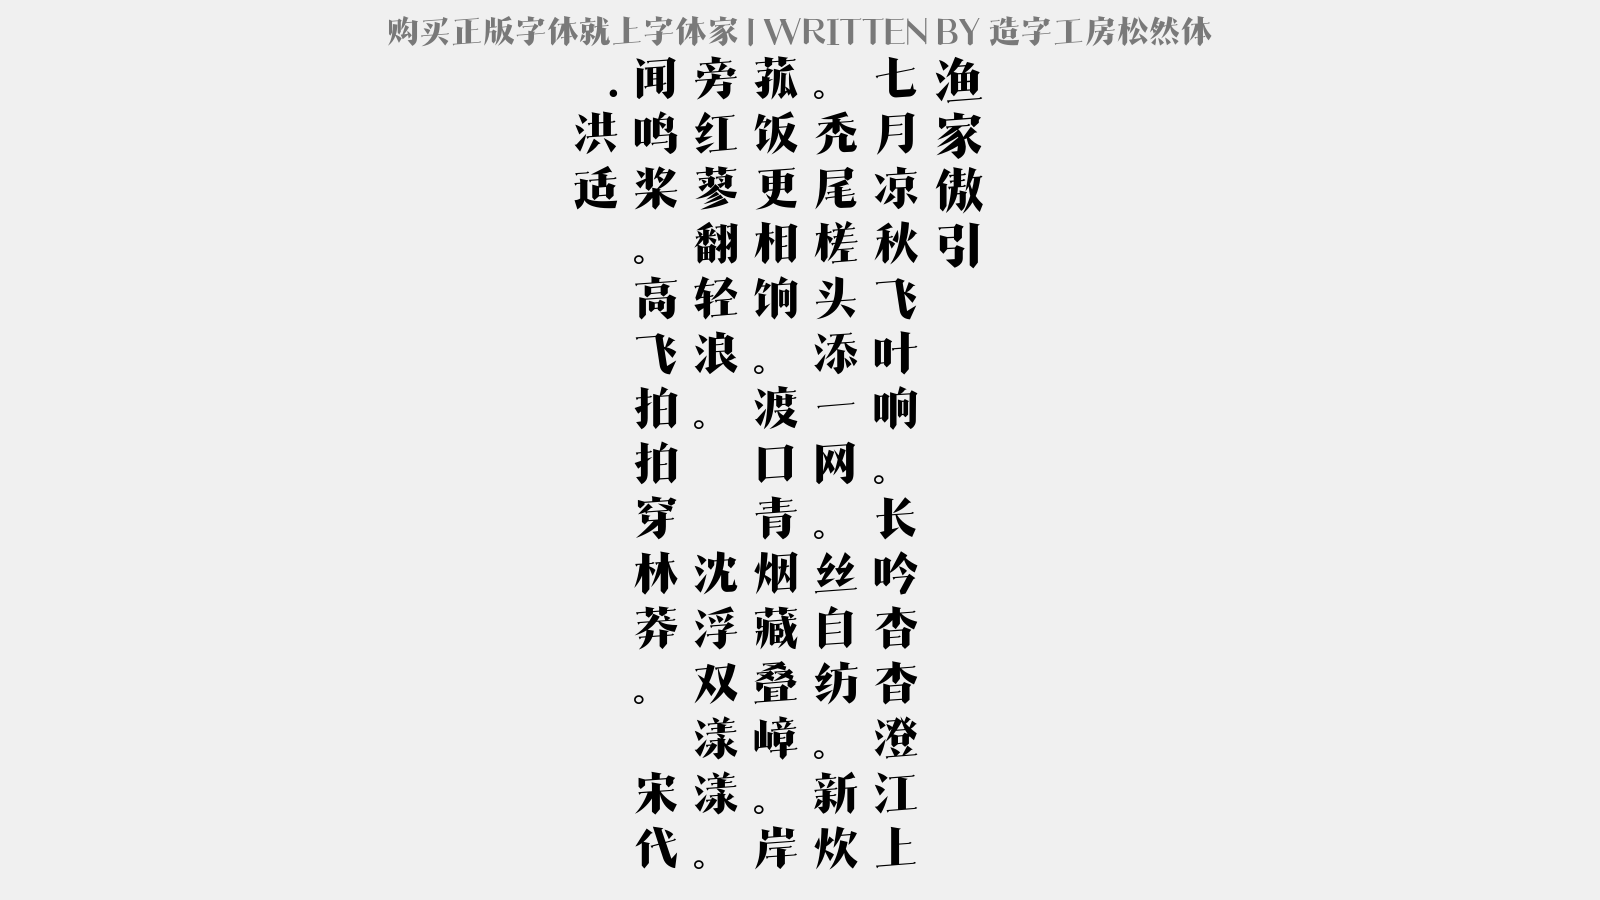 造字工房松然体免费字体下载 中文字体免费下载尽在字体家